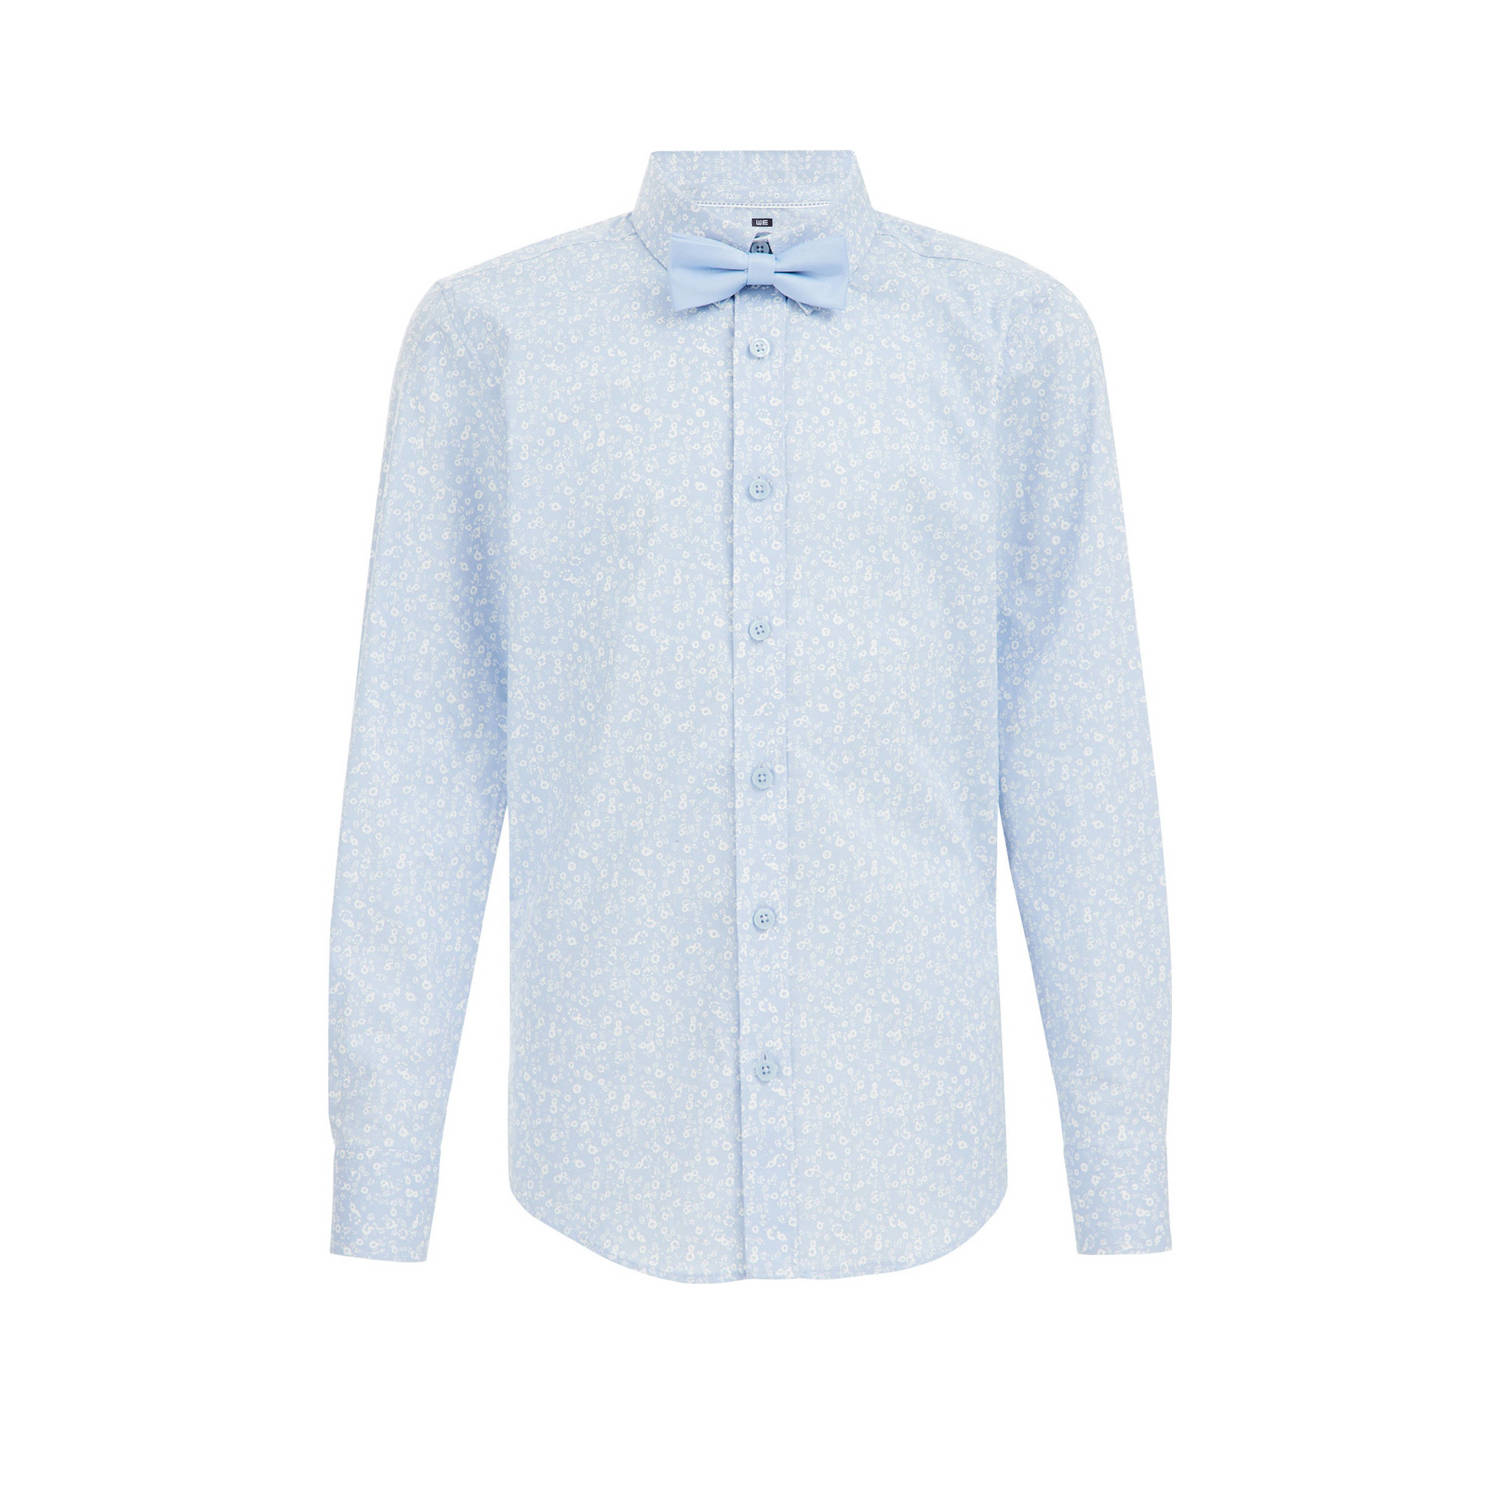 WE Fashion overhemd met all over print lichtblauw Jongens Stretchkatoen Klassieke kraag 110 116